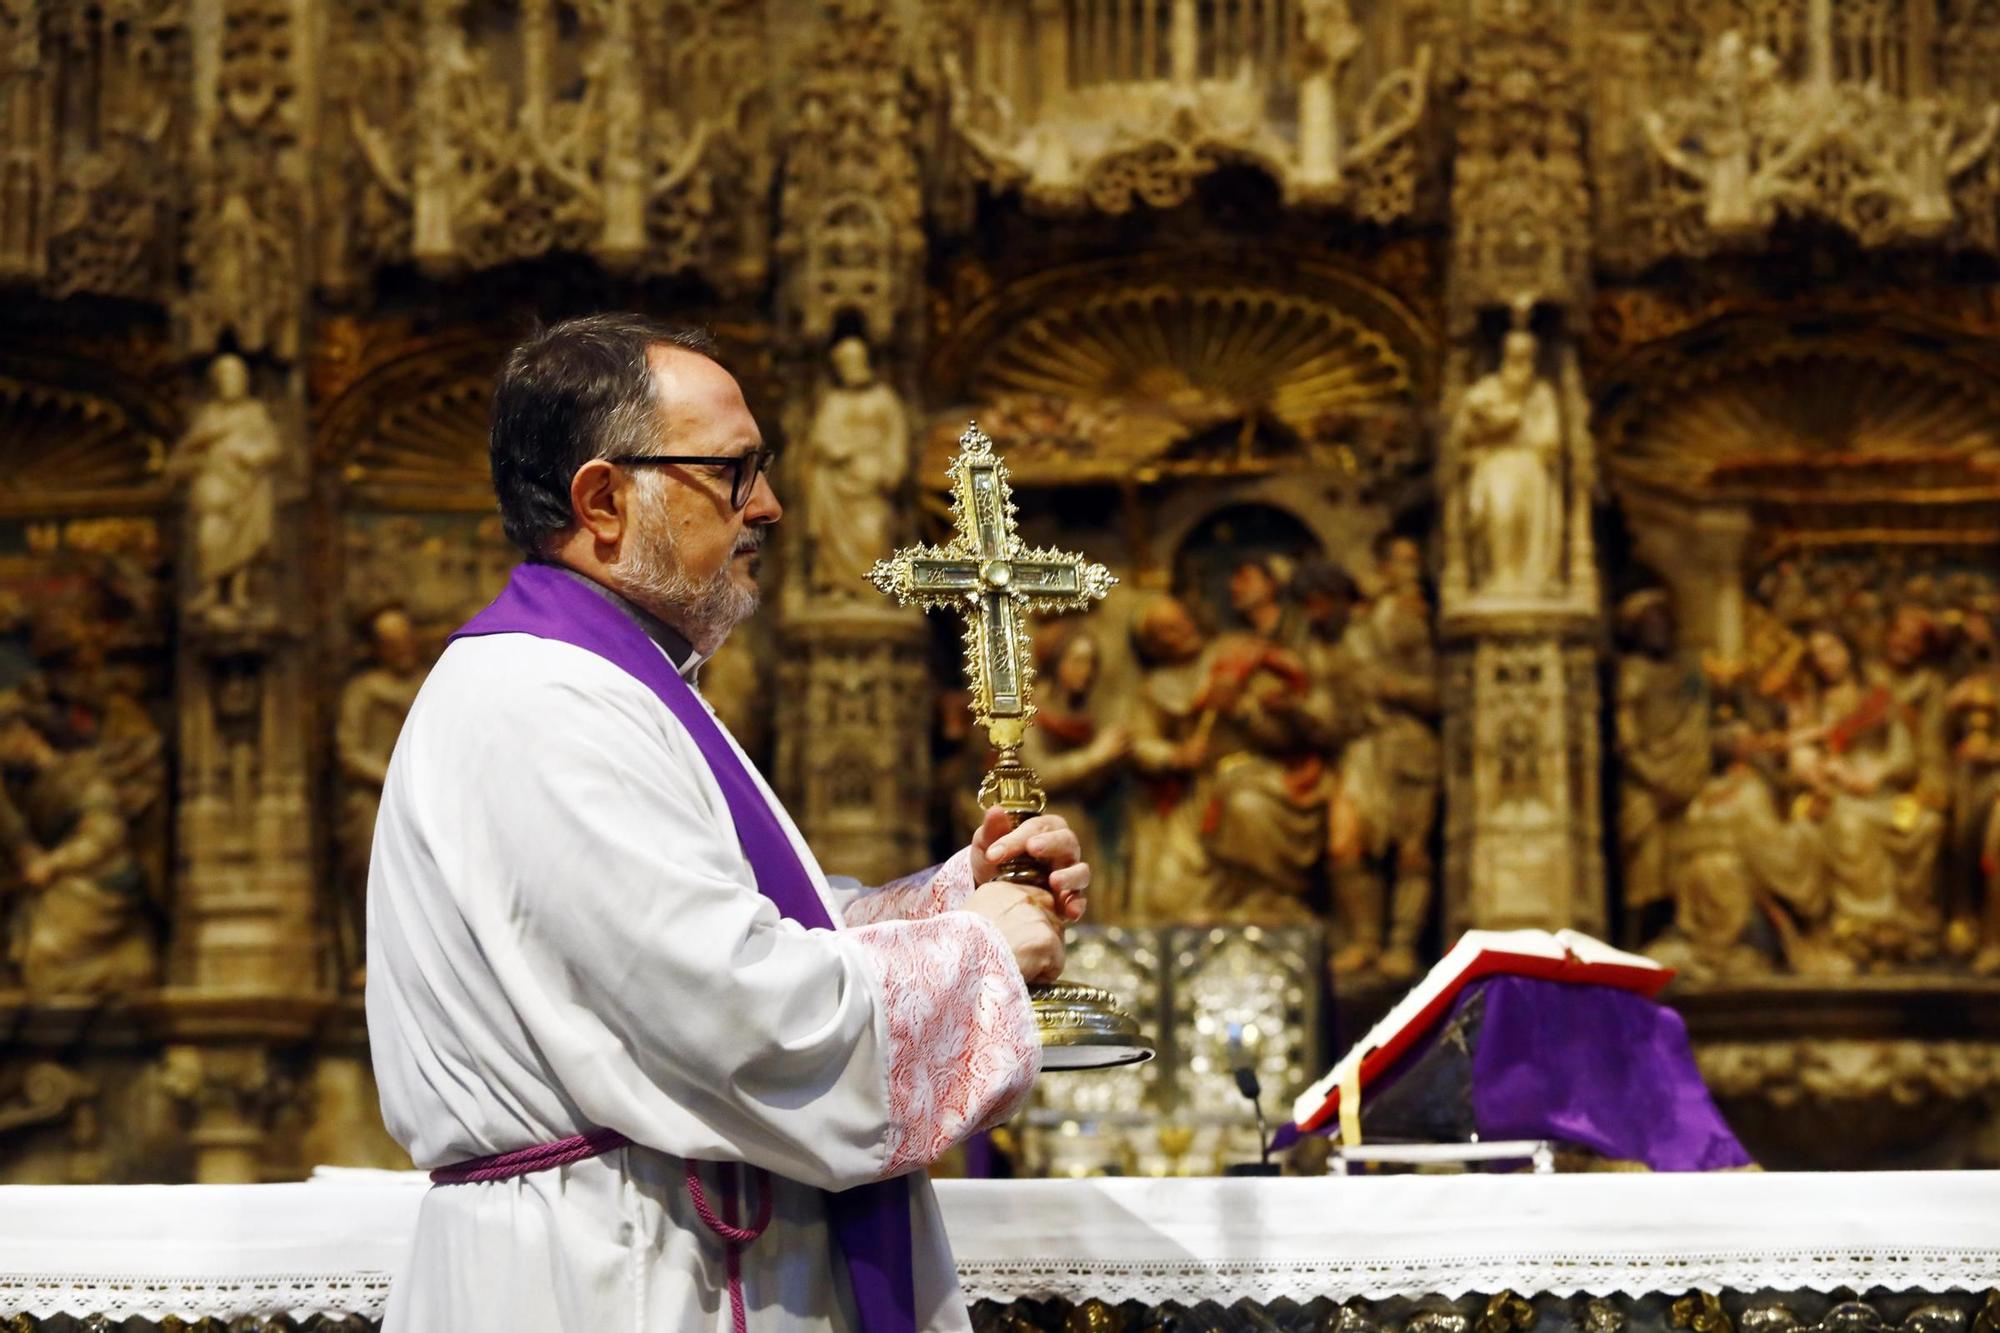 EN IMÁGENES | La Veracruz de Caspe, una de las grande reliquias de la cristiandad, puede venerarse en la basílica del Pilar